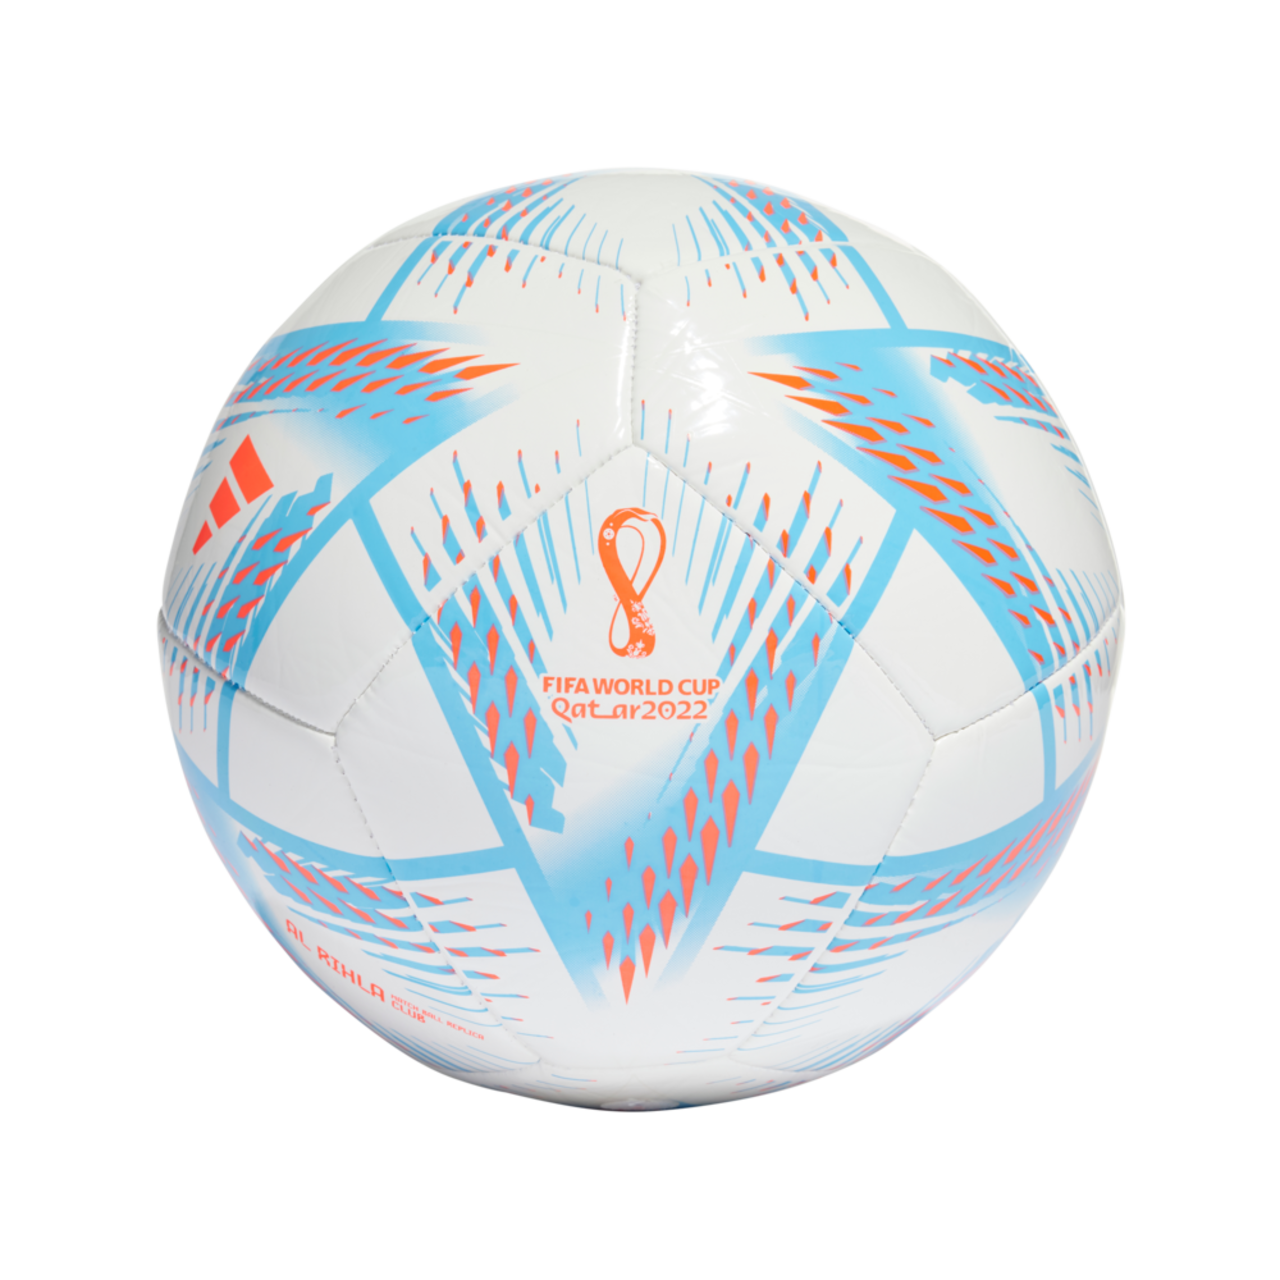 Mini ballon de soccer Adidas Coupe du monde 2022, taille 1